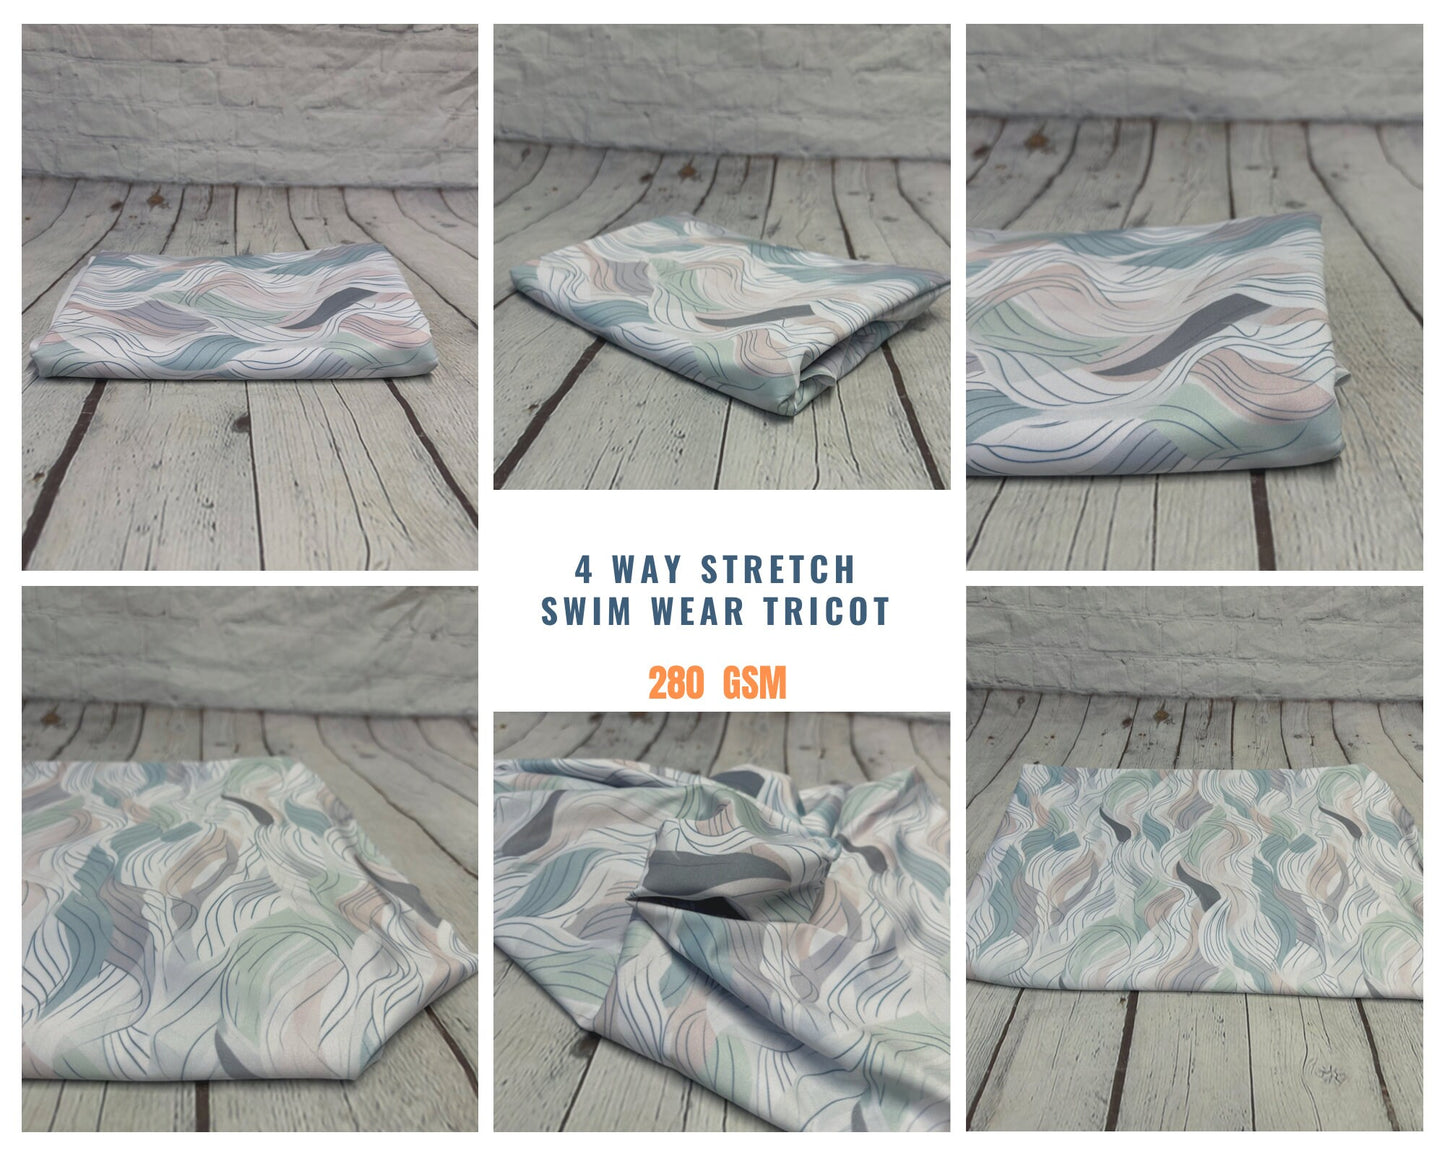 4 Way Stretch Print Spandex Fabric By The Yard Tricot Swim Wear Bikini Pastel Sage Hazy Wave Water 280 GSM